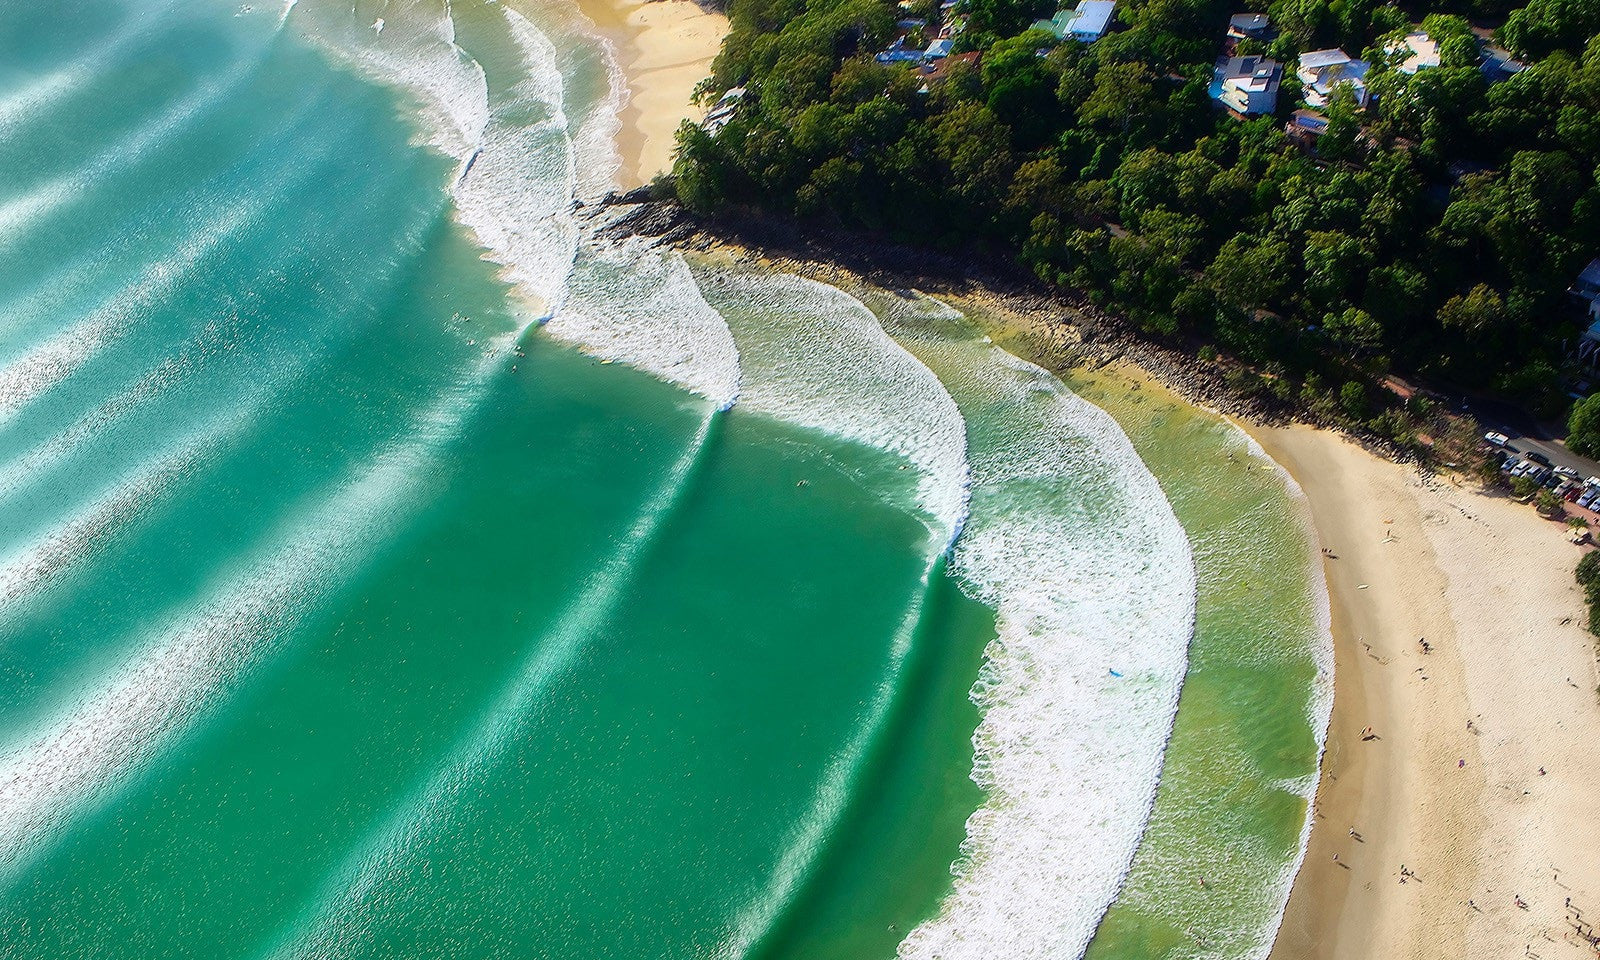 Aussie surfers sense golden opportunity